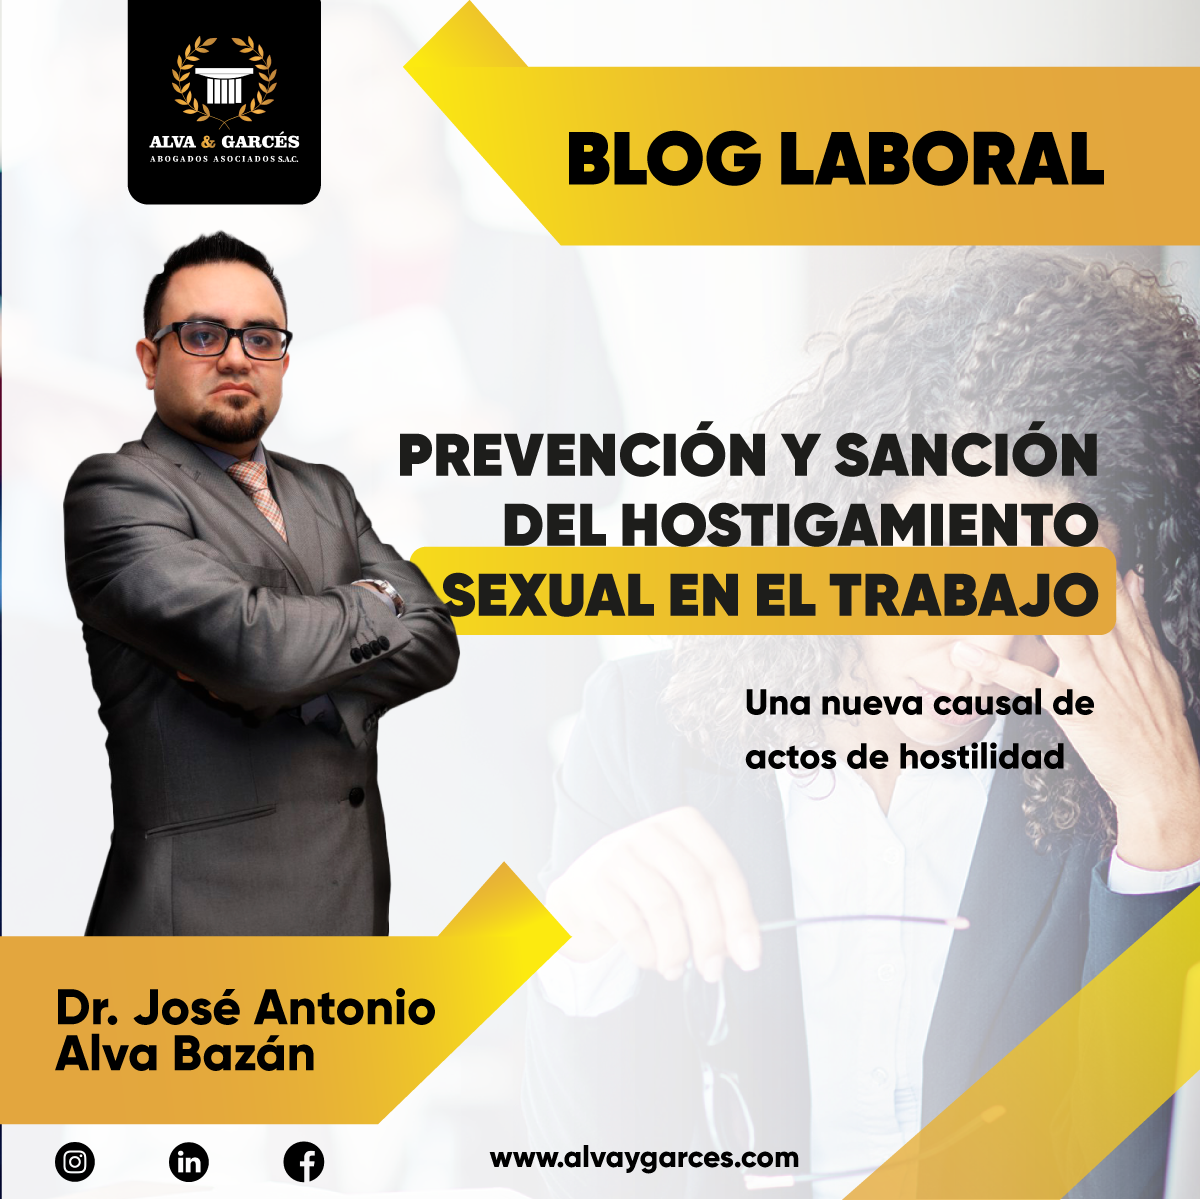 BLOG LABORAL: PREVENCIÓN Y SANCIÓN DEL HOSTIGAMIENTO SEXUAL EN EL TRABAJO